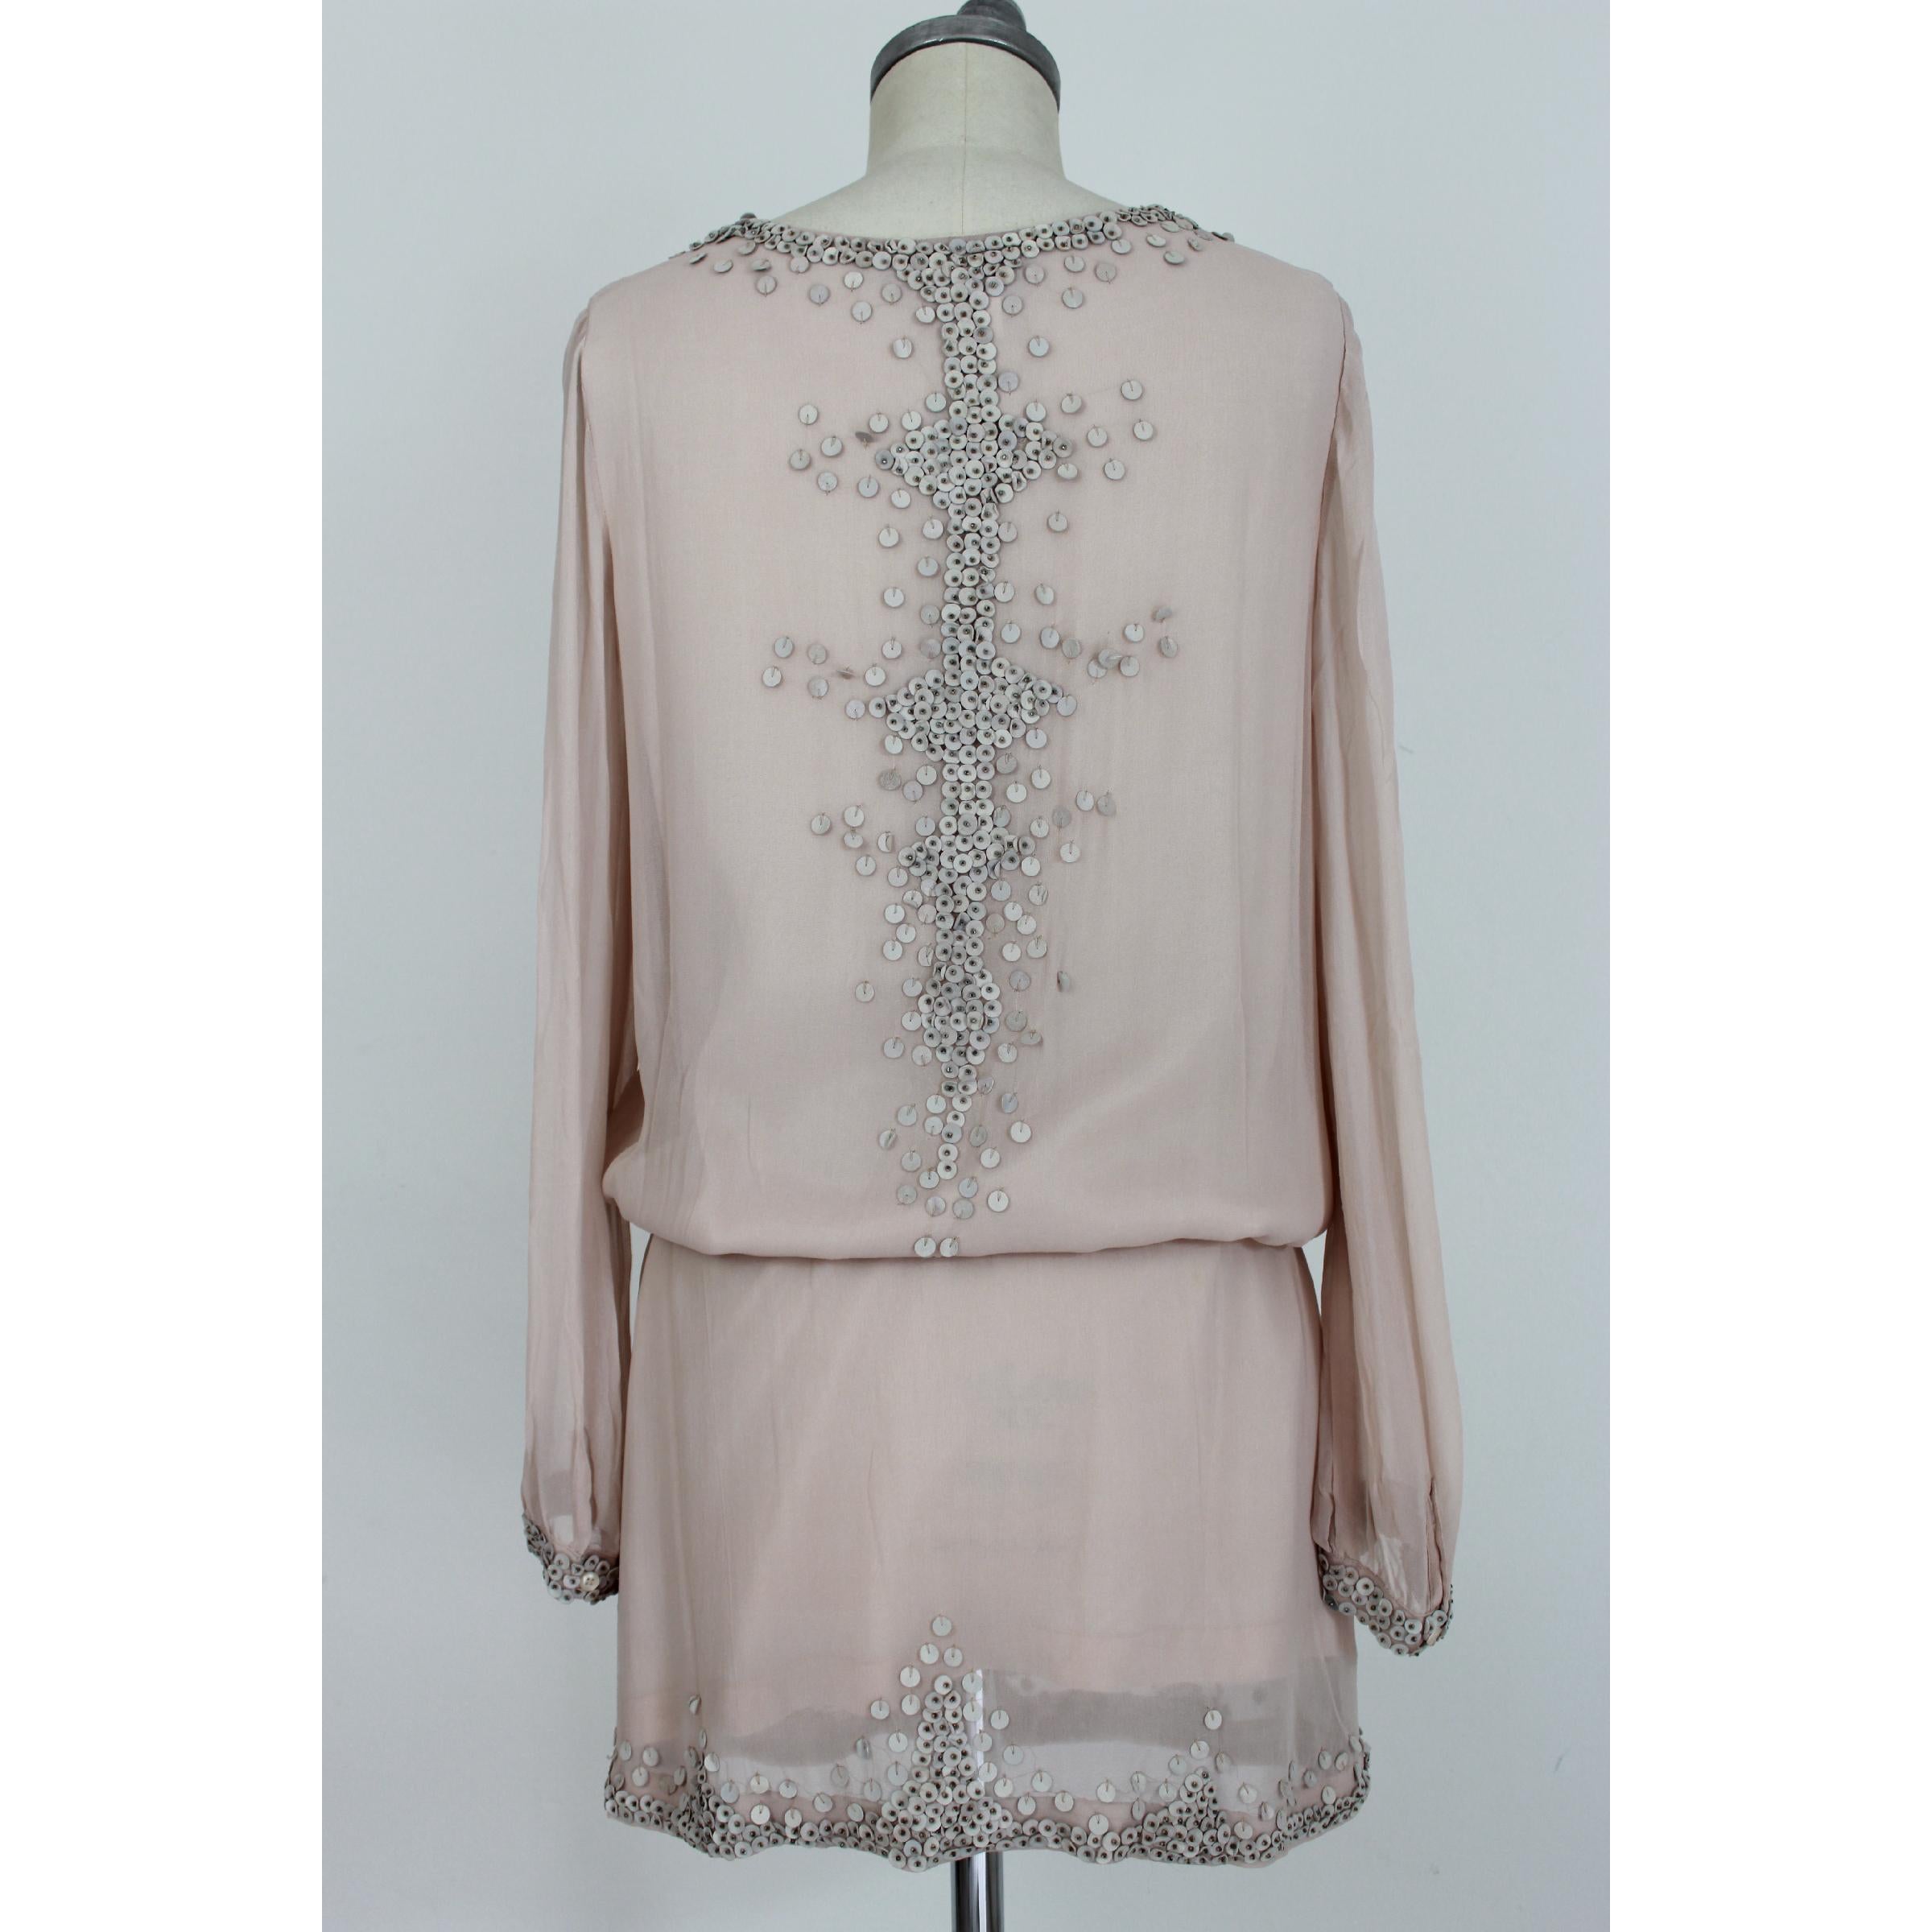 Kurzes Vintage-Kleid von Antik Batik für Frauen. Puderrosa Farbe, 100% Seide, Applikationen von Hand genäht 100% Leder. V-Ausschnitt, elastischer Taillengürtel, gefüttert. 1990s. Entworfen in Frankreich, hergestellt in Indien. Ausgezeichneter